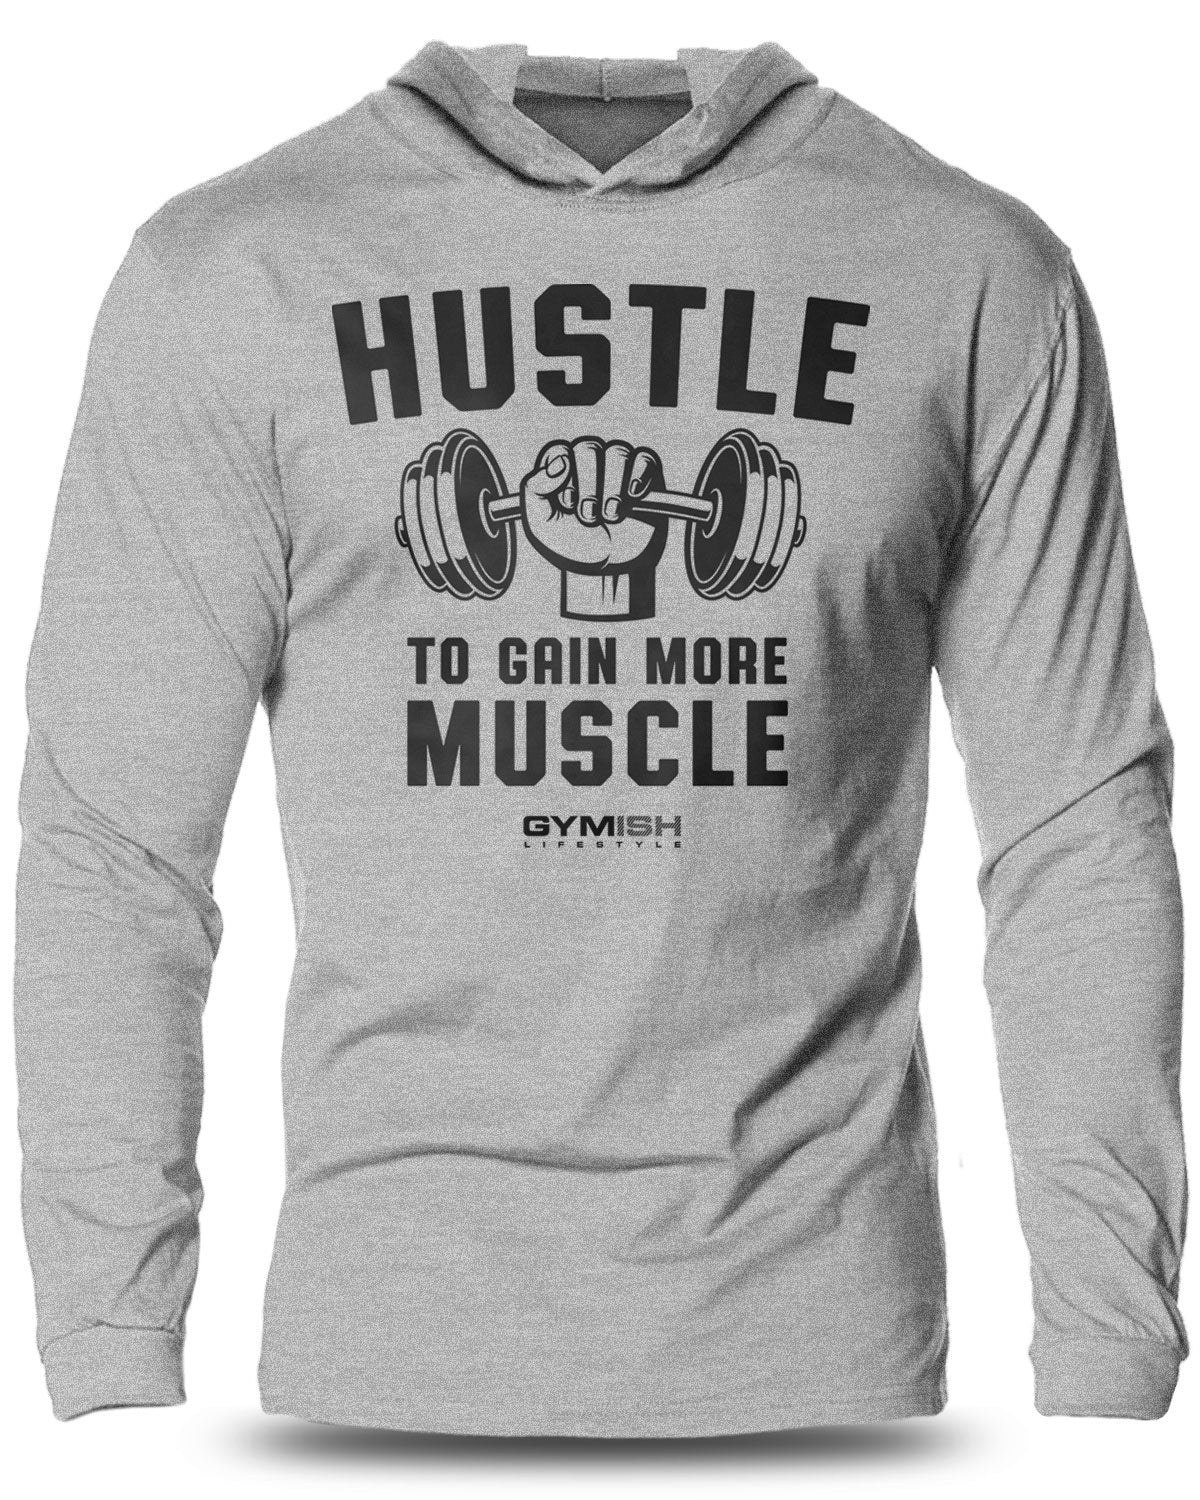 011-Hustle For Muscle Lightweight Long Sleeve Hooded T-shirt for Men